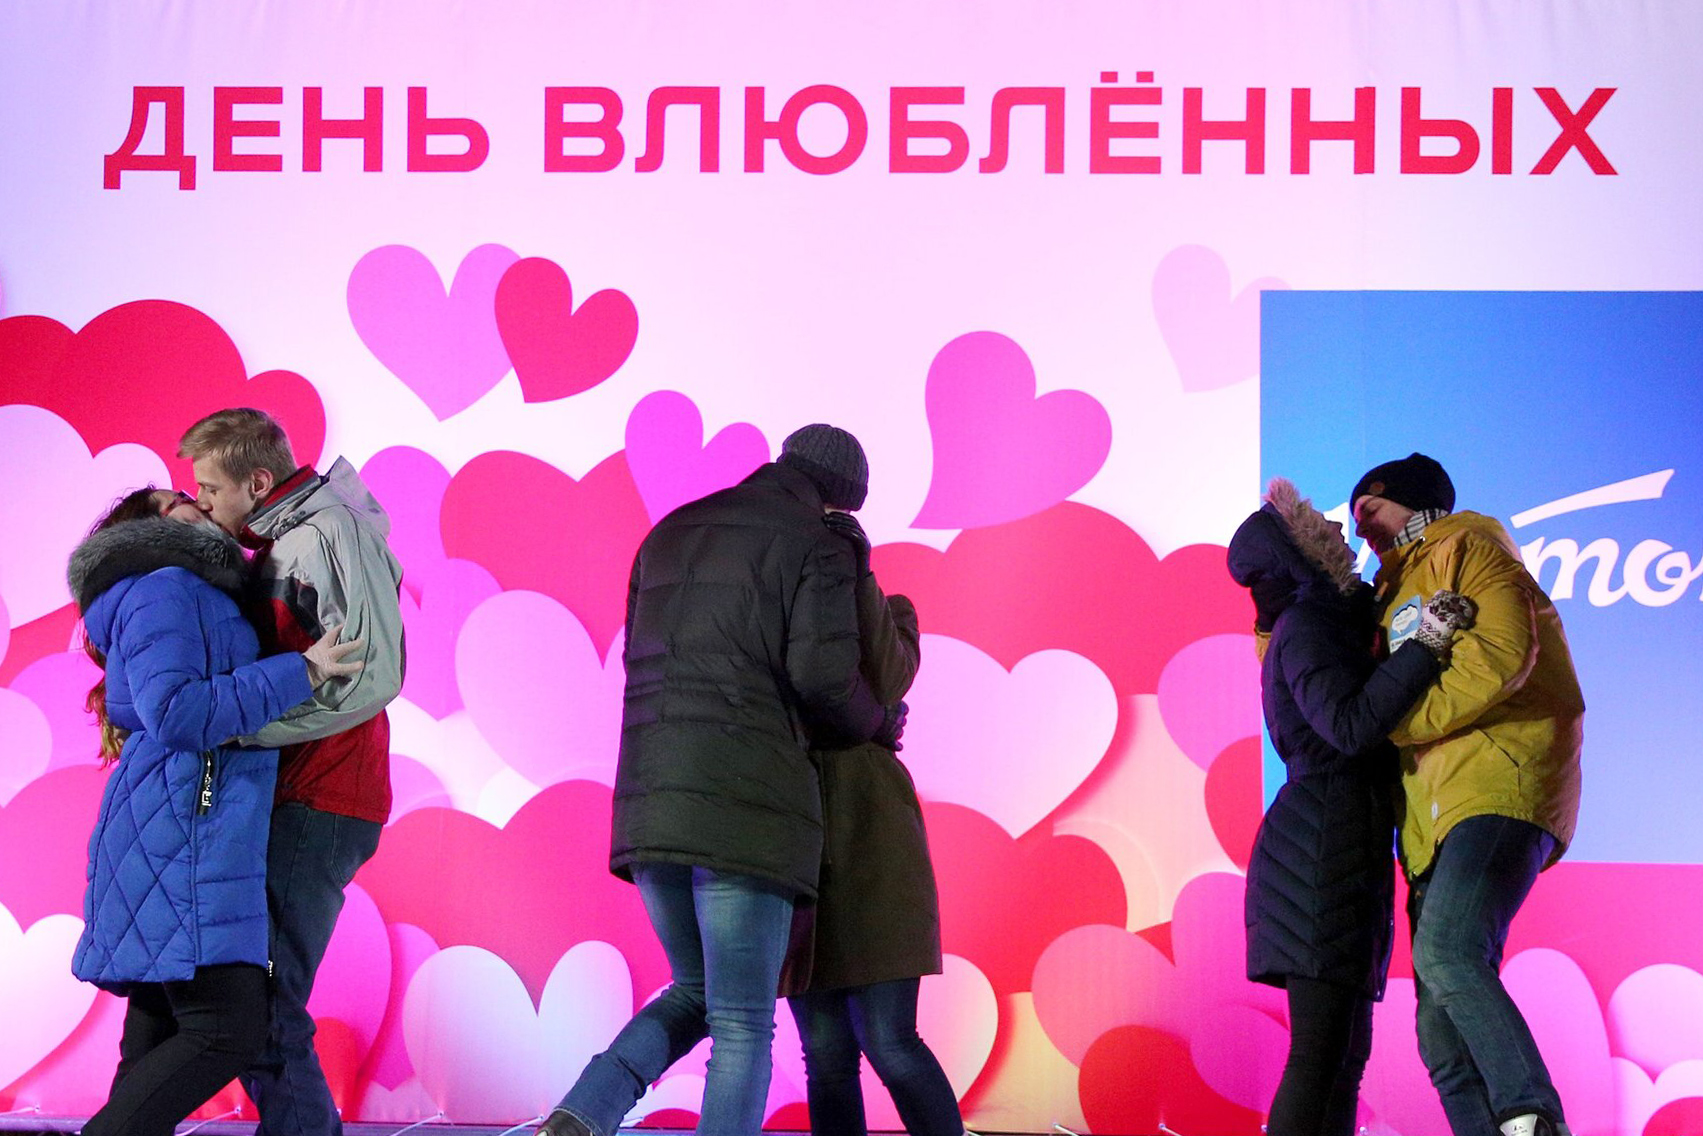 Какой сегодня 14 февраля. С днем влюбленных. 14 Февраля праздник. С днём всех влюблённых. Российский день влюбленных.